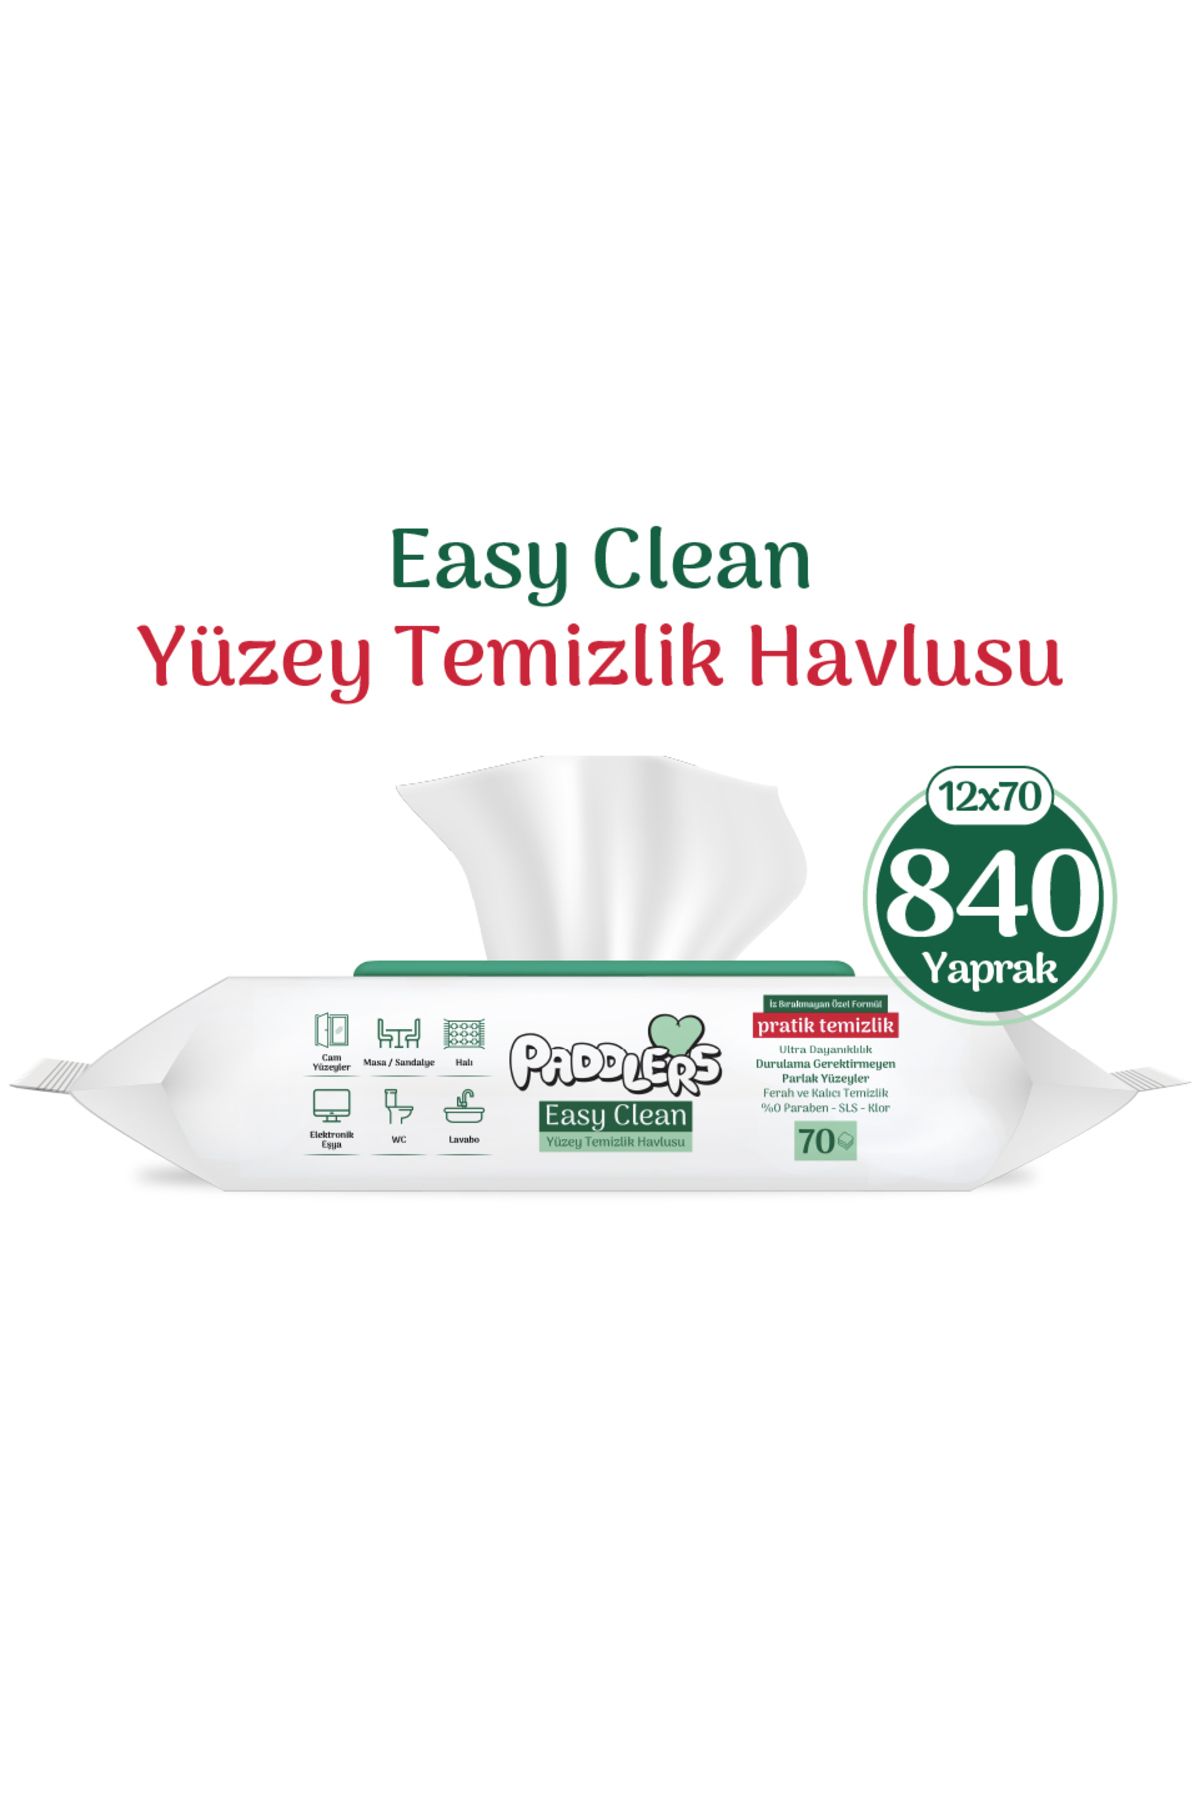 Paddlers Easy Clean Beyaz Sabun Katkılı Yüzey temizlik Havlusu 12x70 (840 Yaprak)